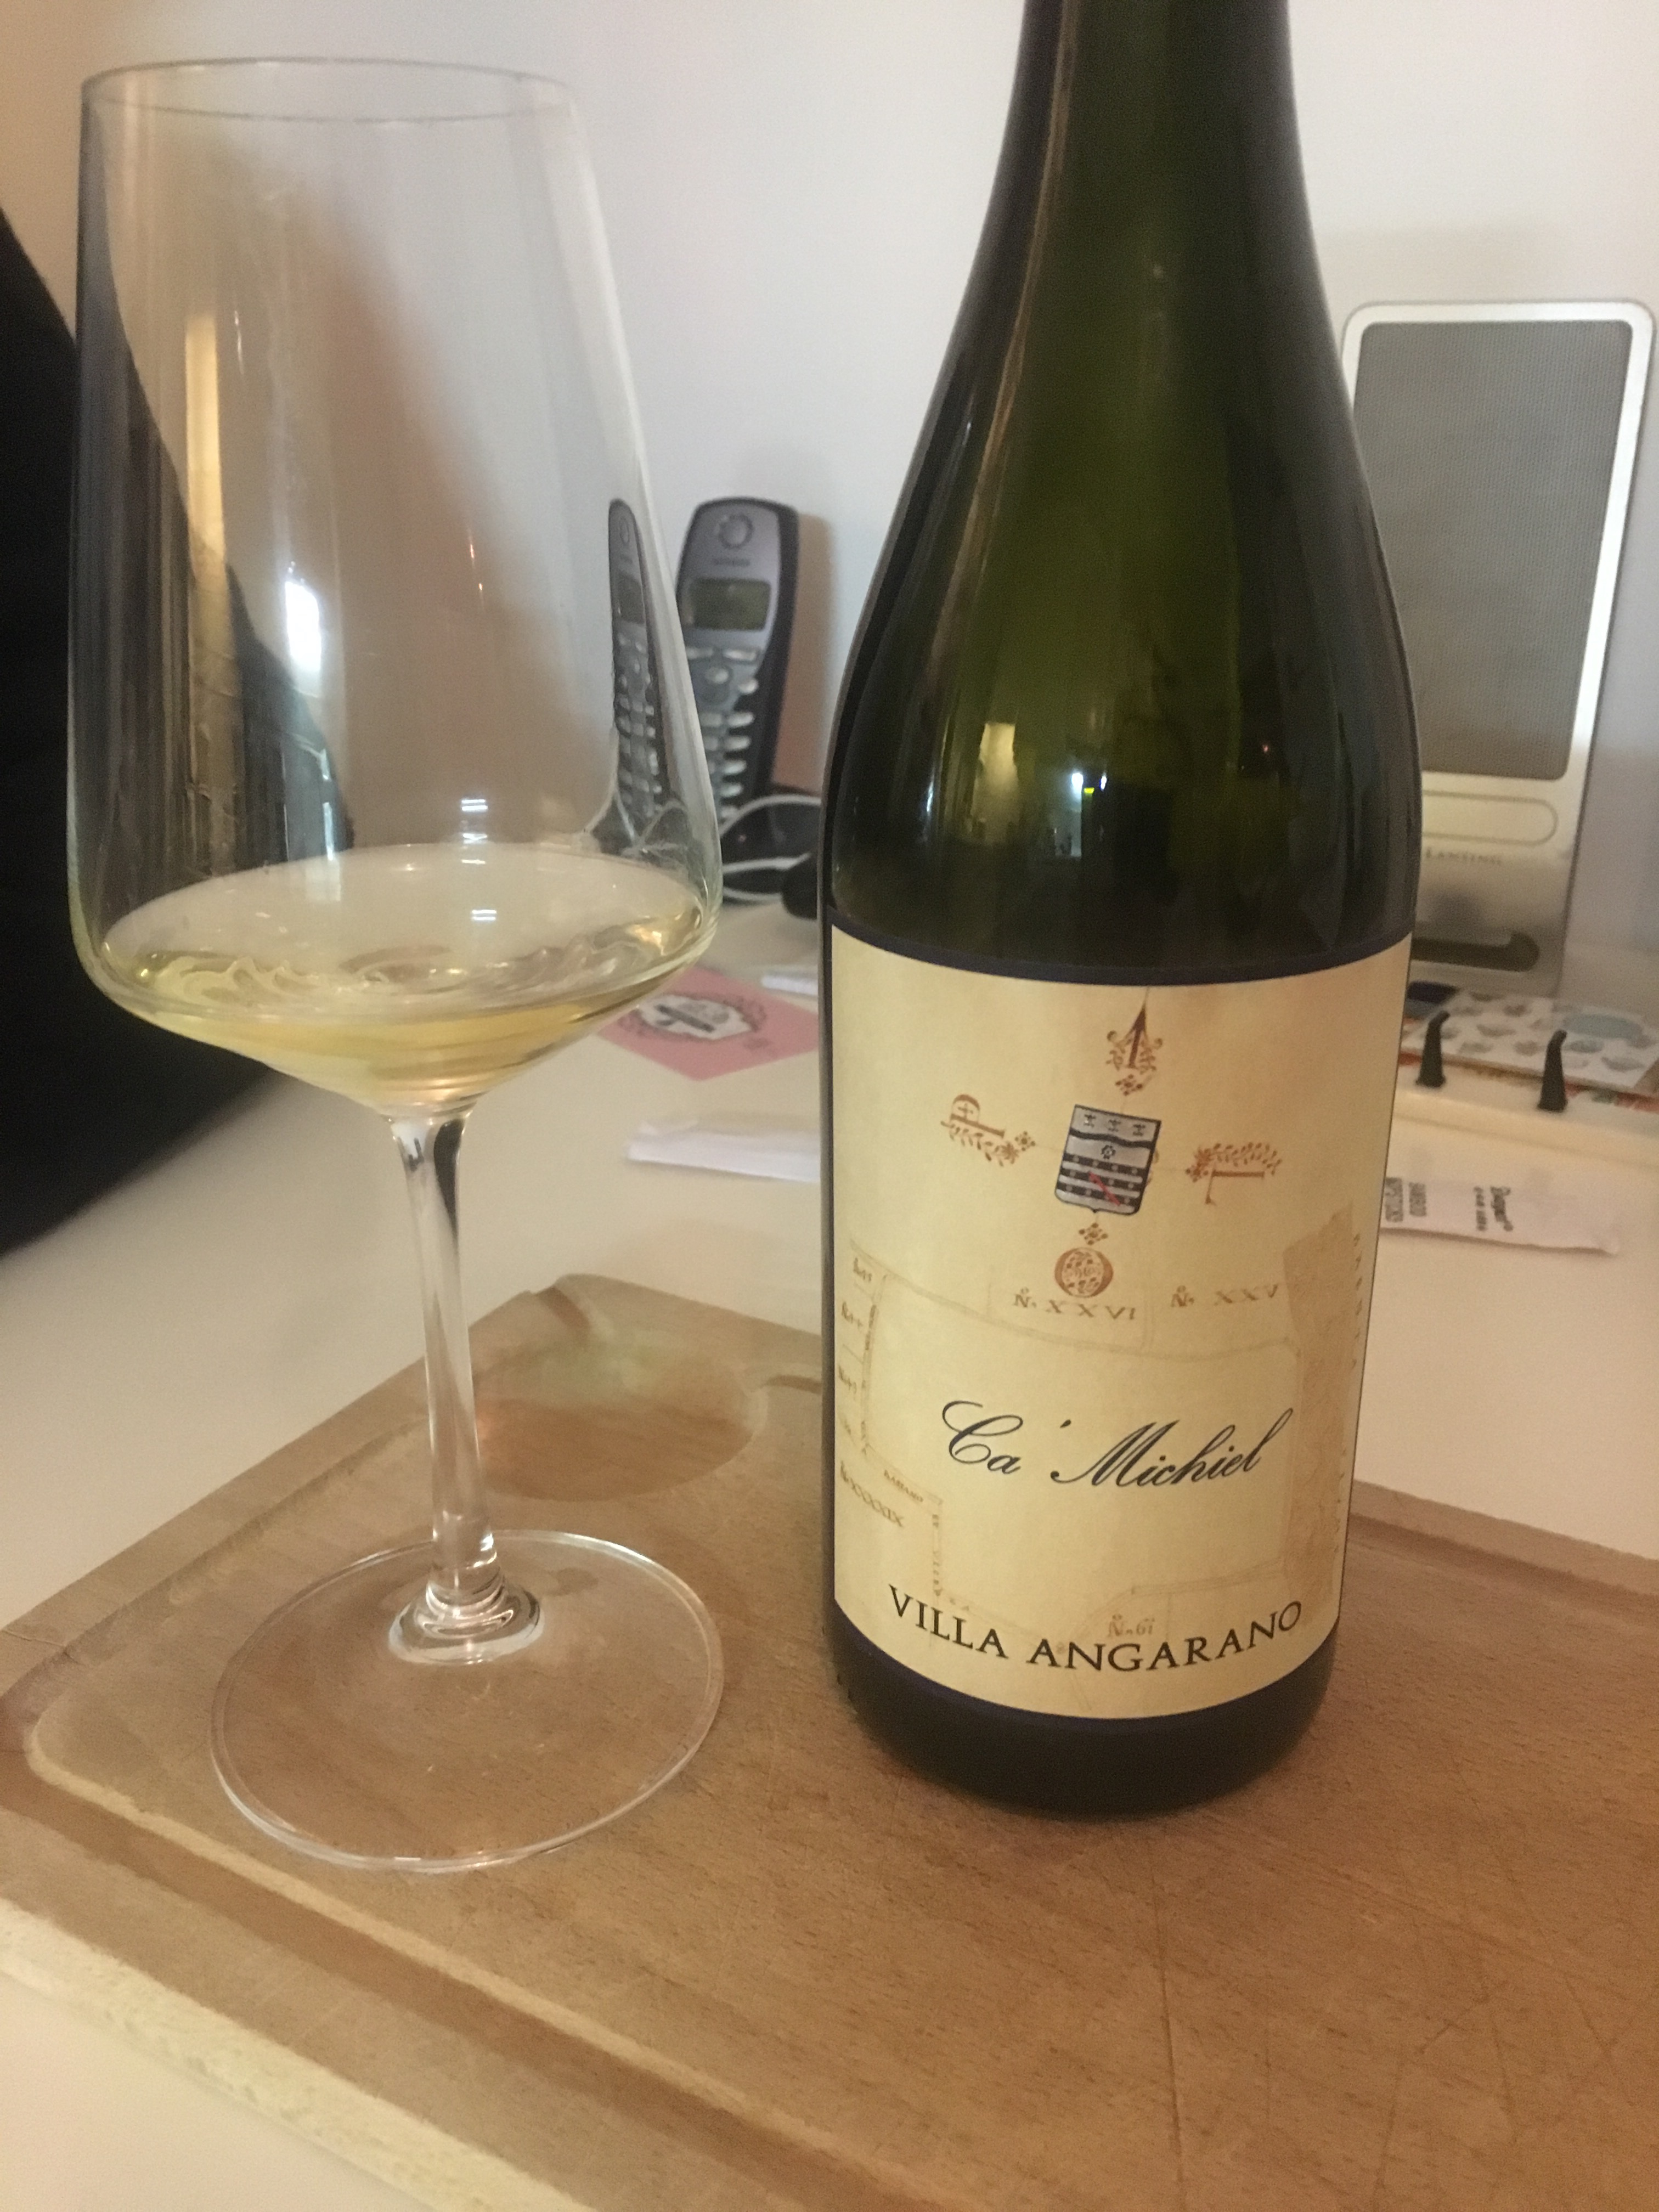 Vespaiolo - fine wine, perfect with fish - Villa Angarano 